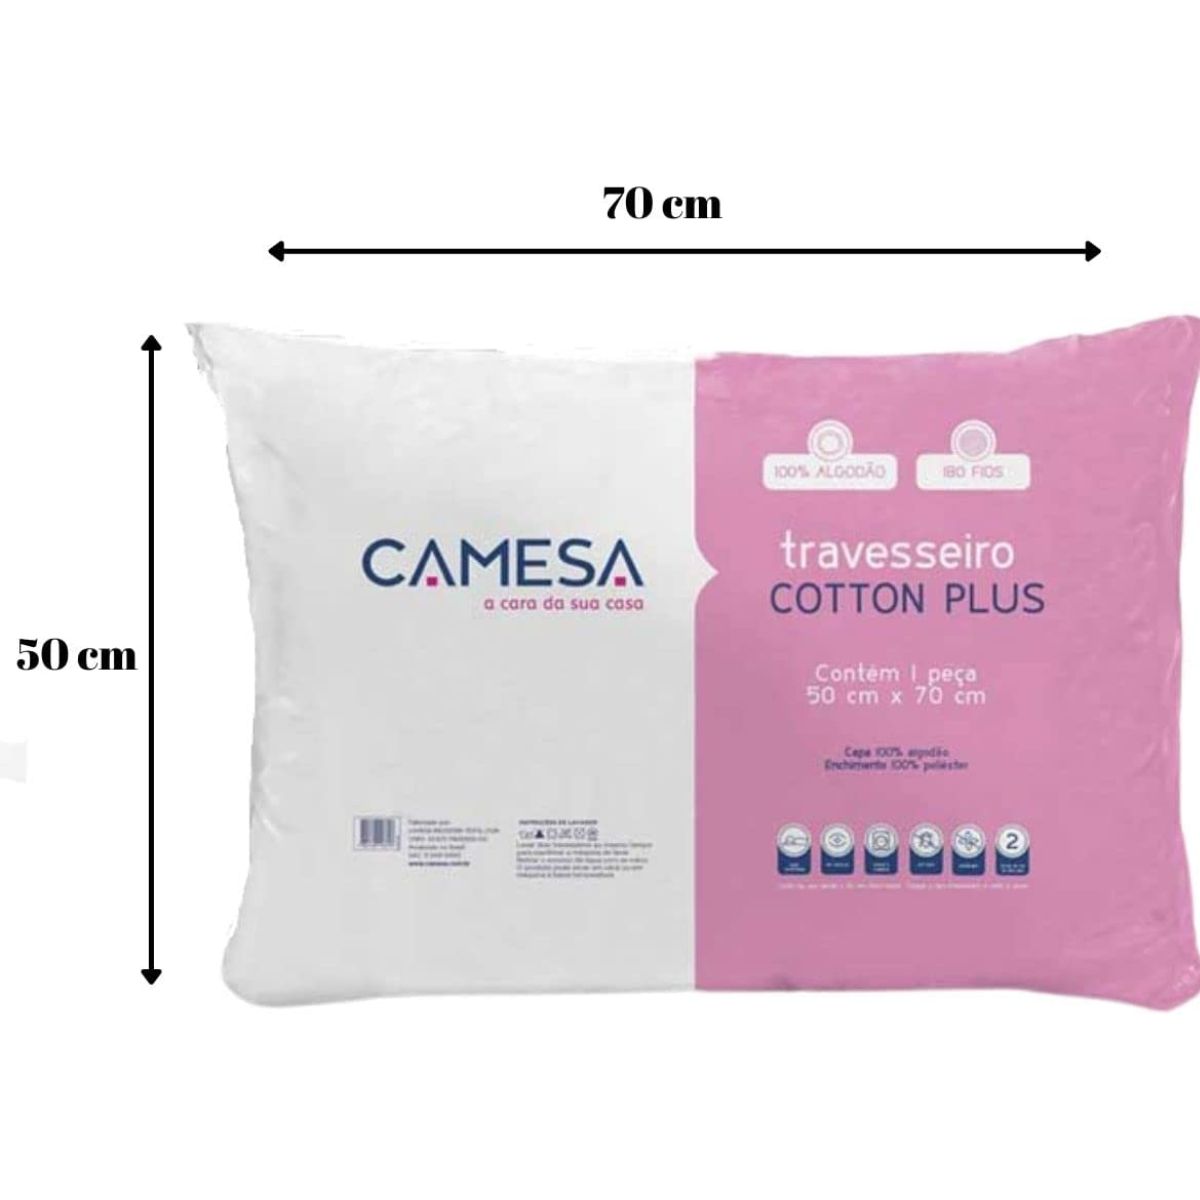 Travesseiro Extra-Firme Poliéster 180 Fios 50cm x 70cm Branco Cotton Plus  Camesa - Carrefour - Carrefour